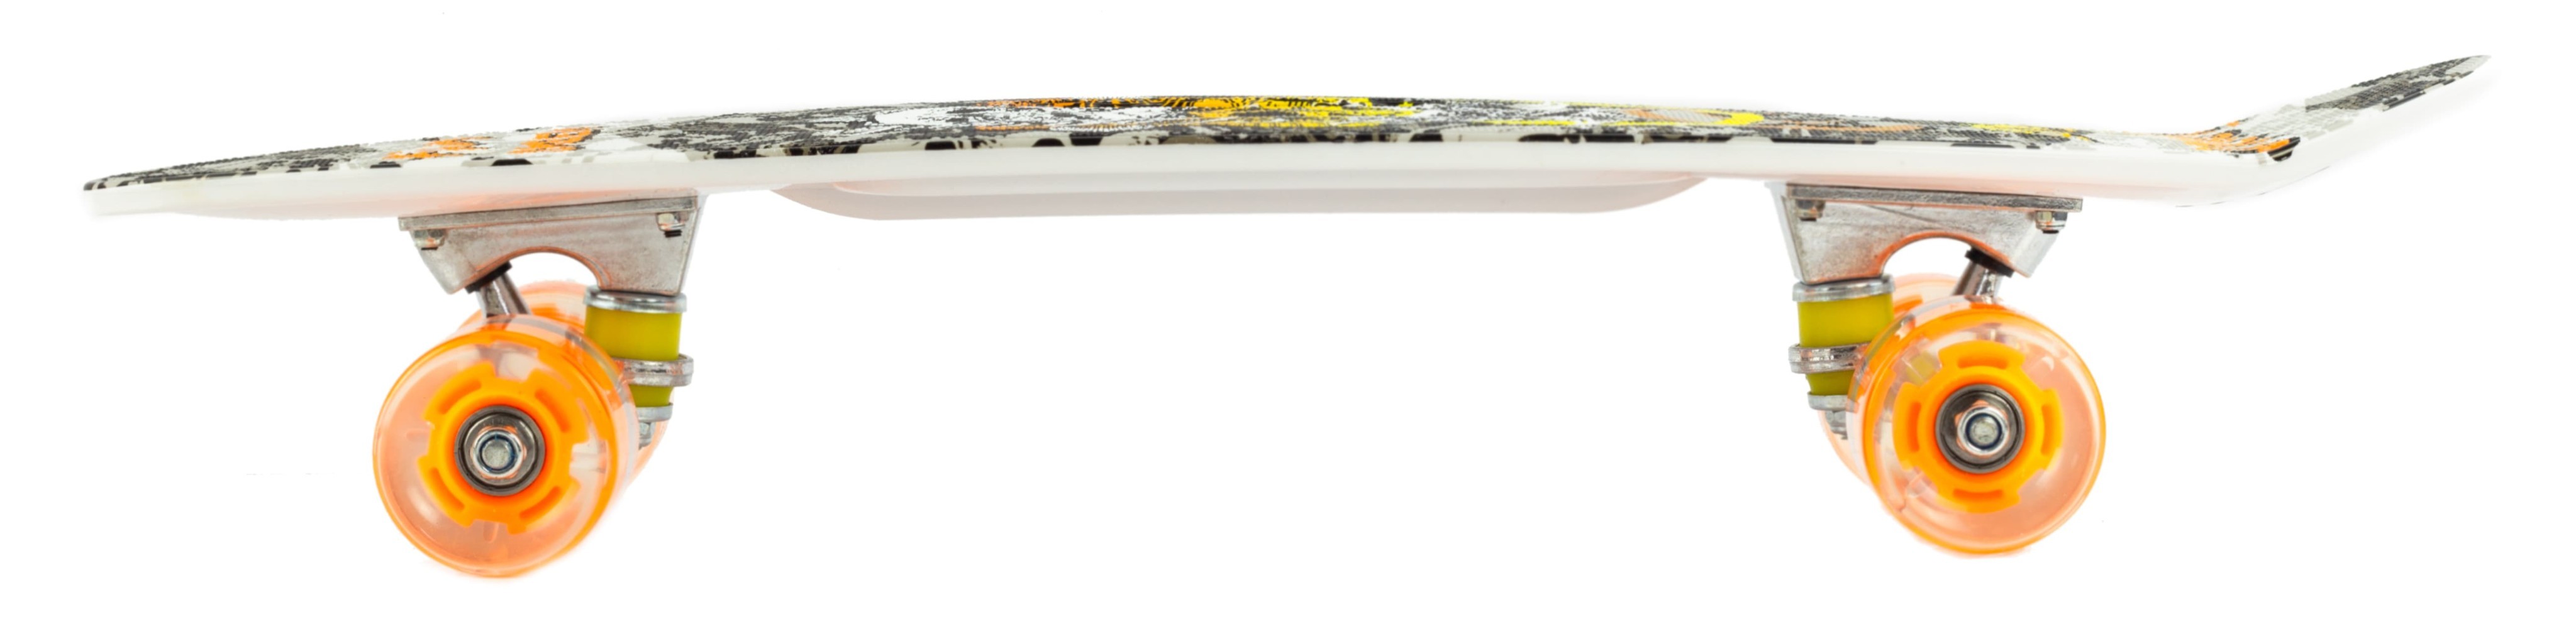 Пенни Борд со светящимися колесами и ручкой для переноски, 60 см. Т00403 / Черно-белый